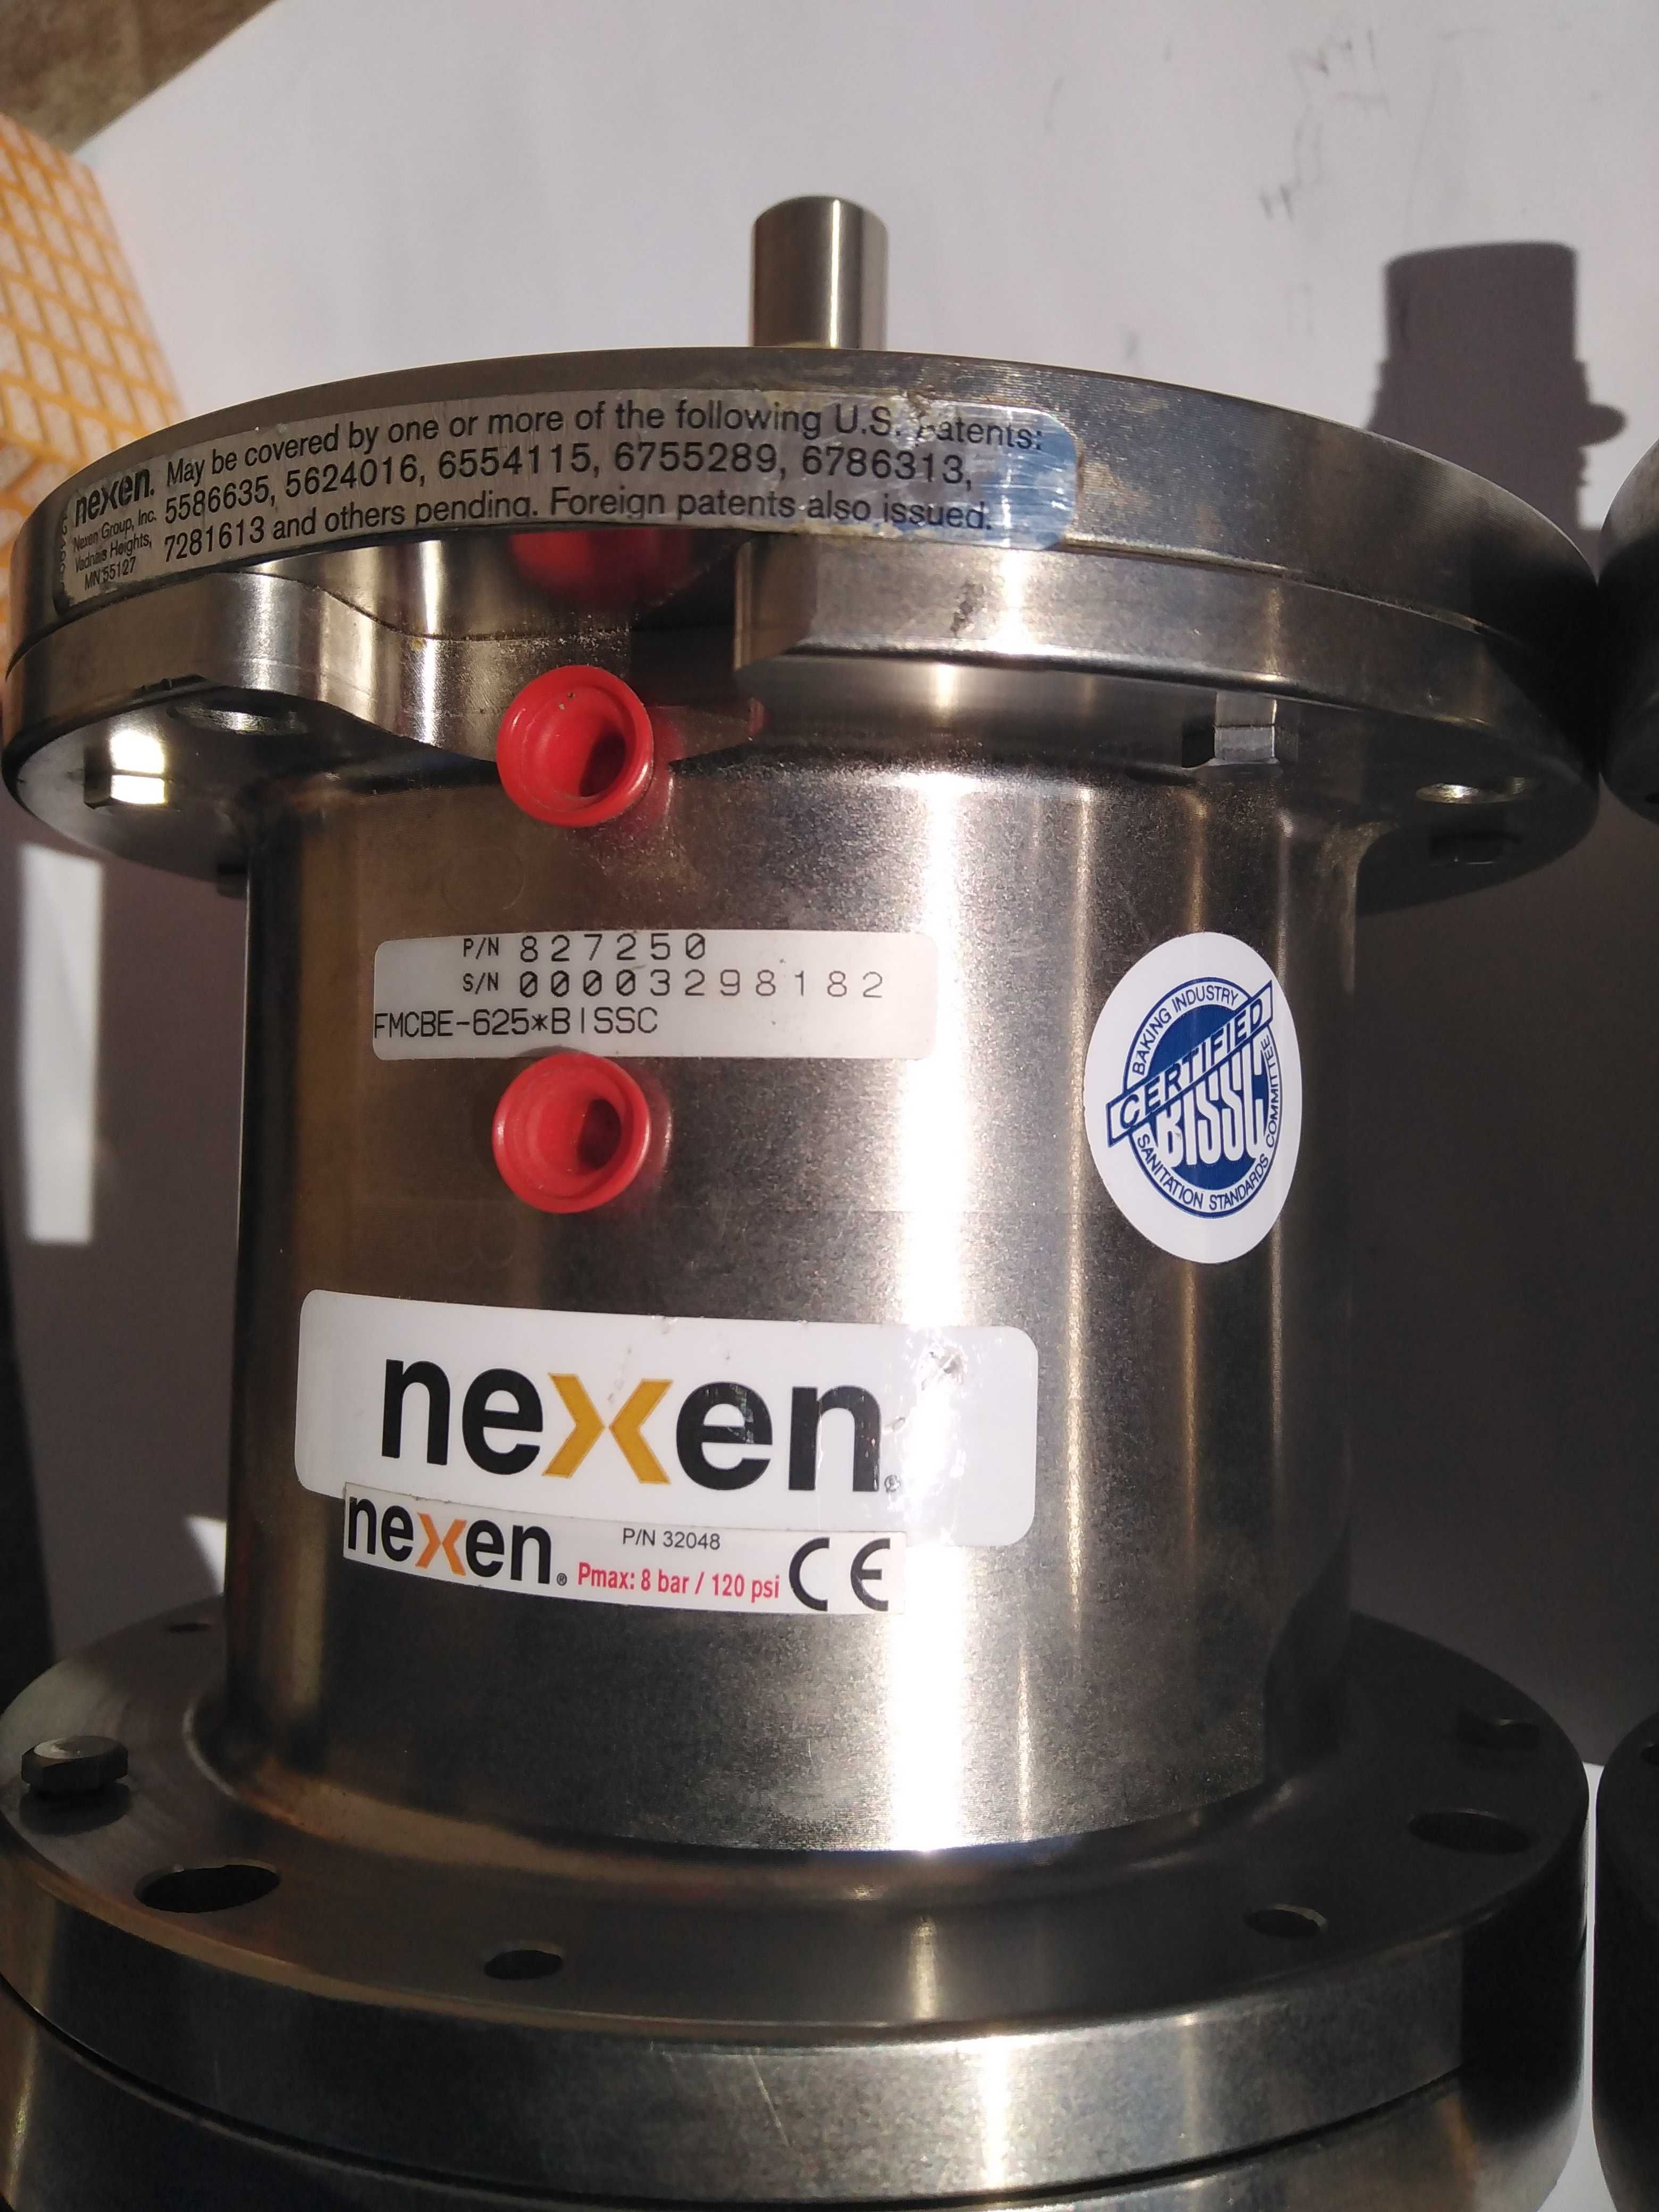 Nexen FMCBE-625 , cheie de blocare, supapa integrala, pompa